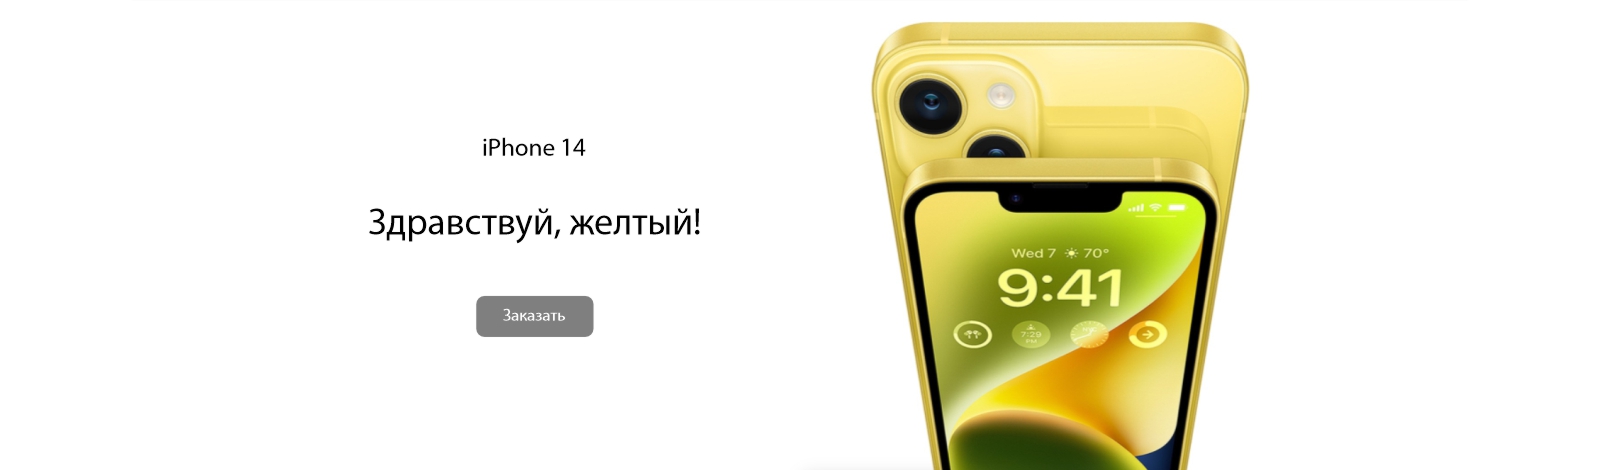 *iPhone Yellow